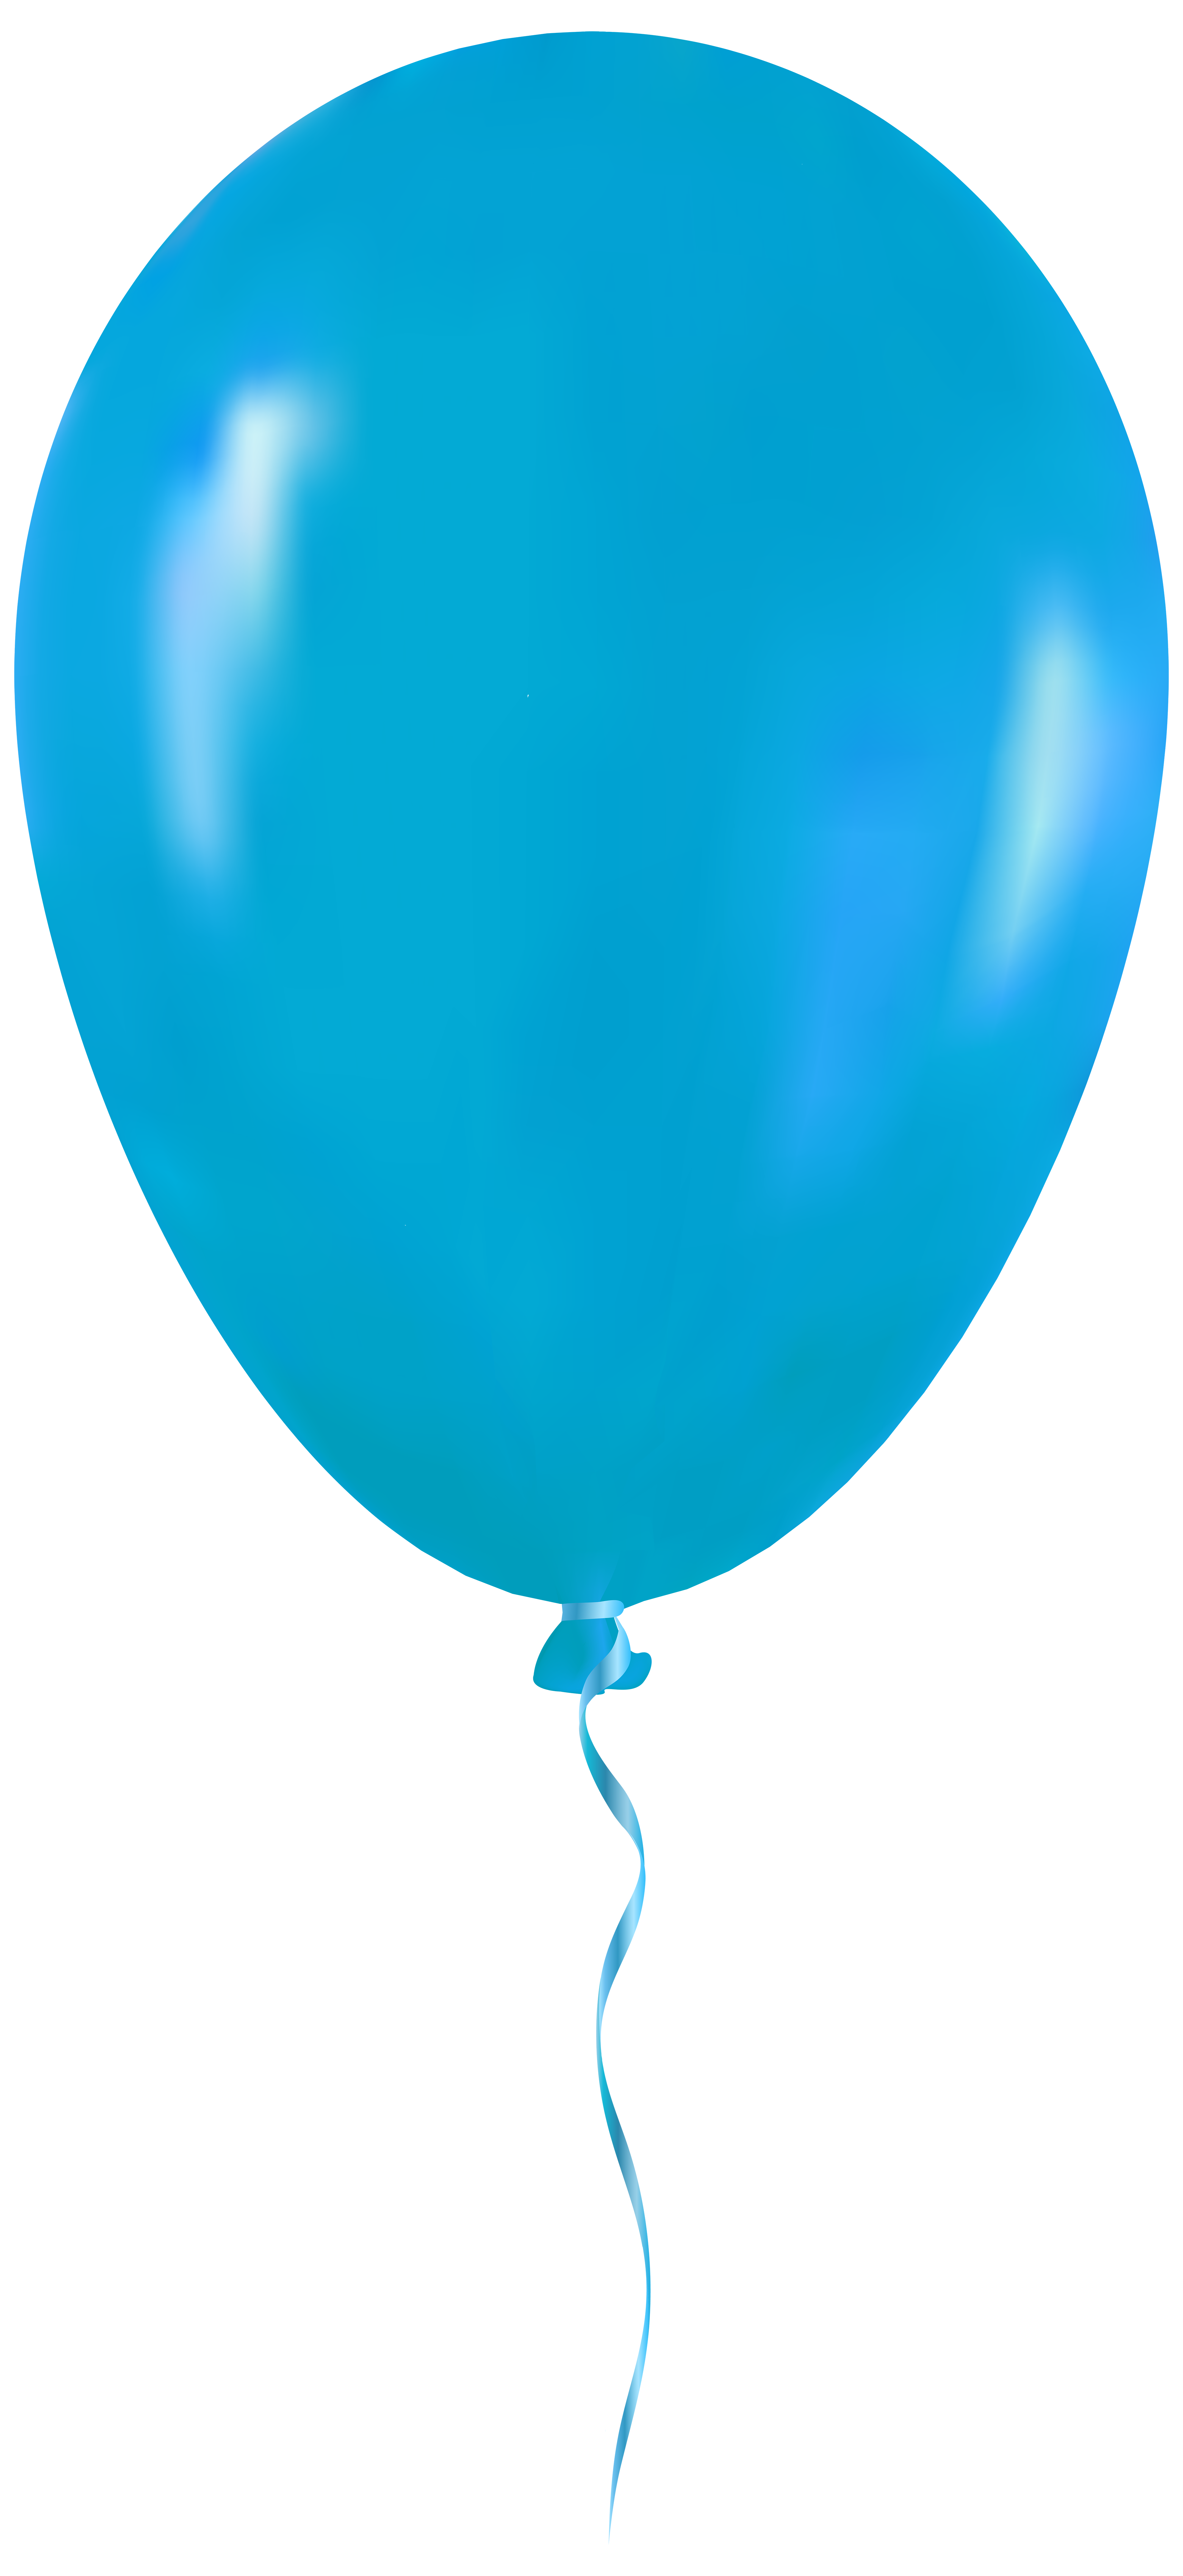 ballon clipart aqua